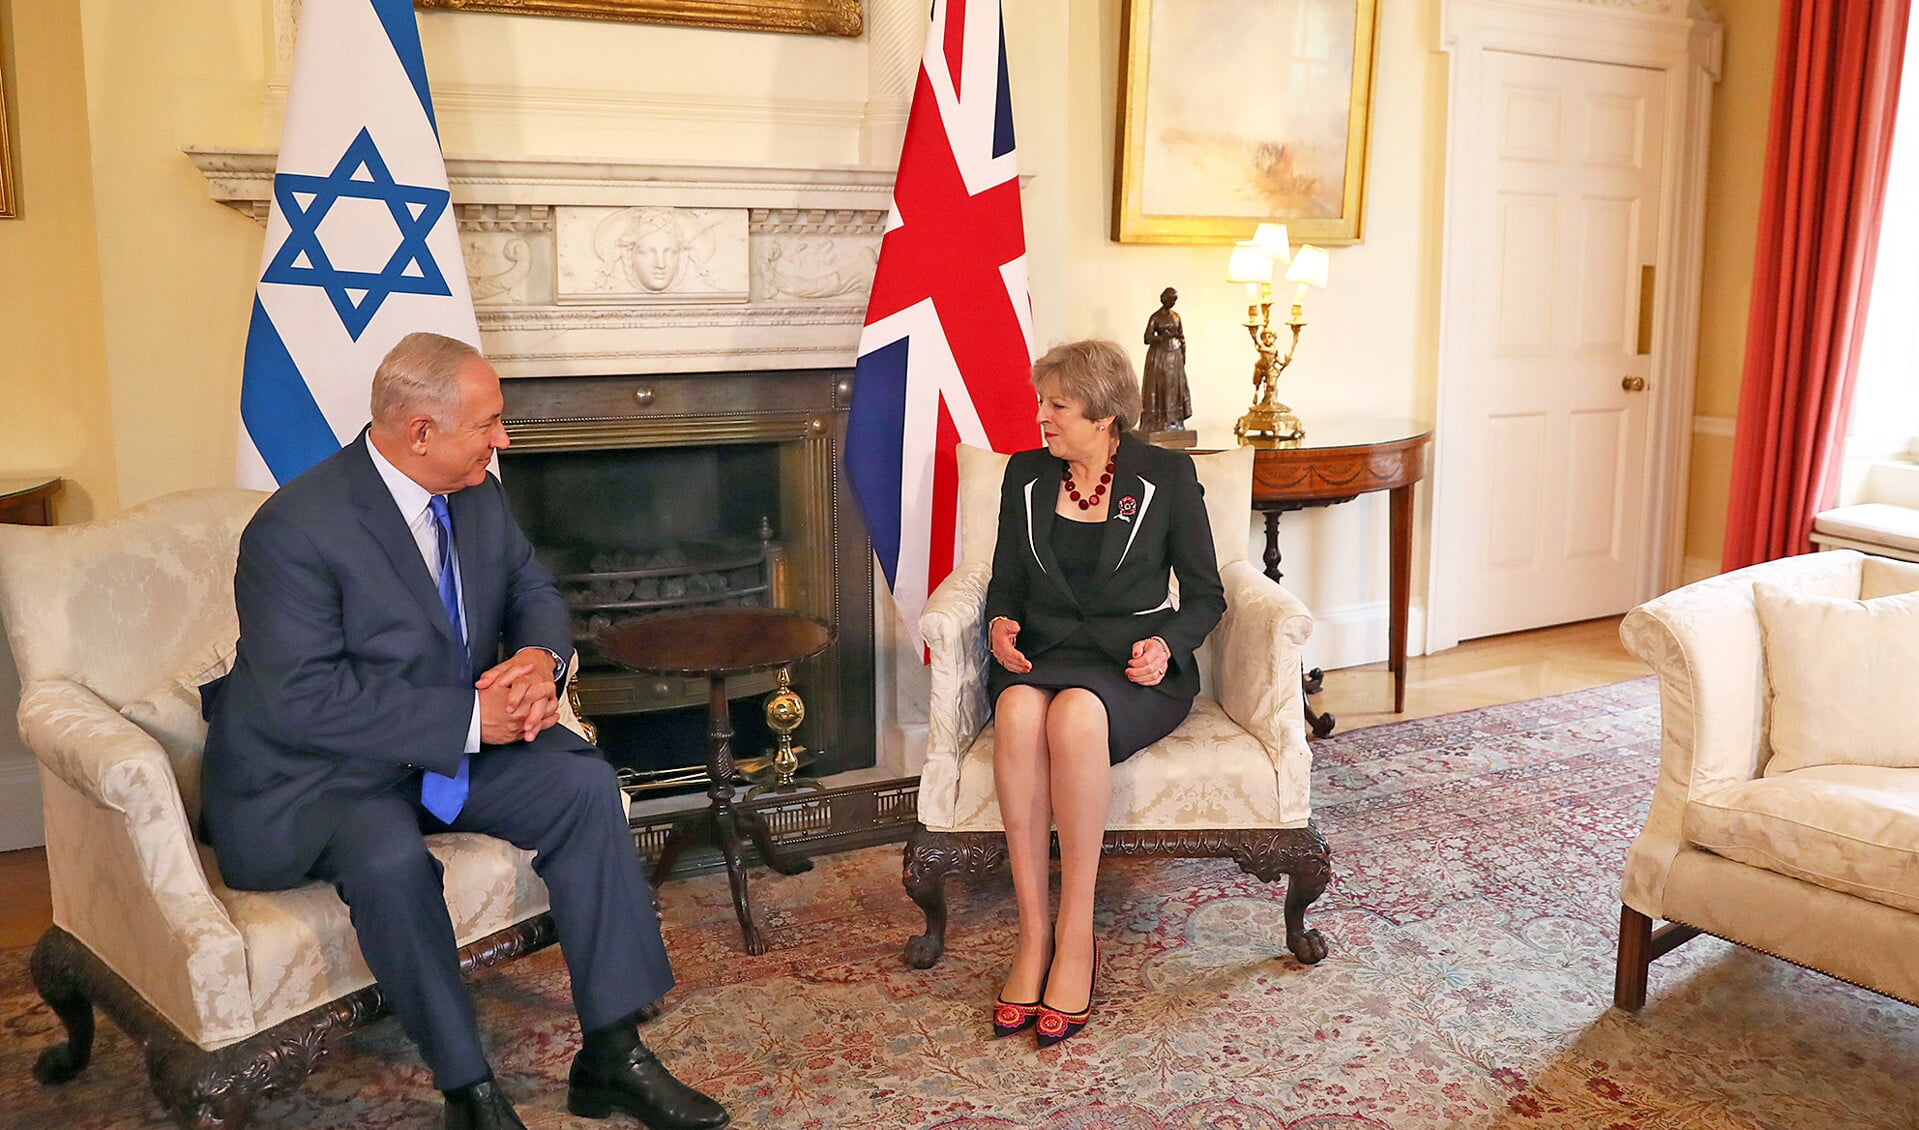 De Britse premier Theresa May had vorige week een ontmoeting met haar Israëlische collega Netanyahu.